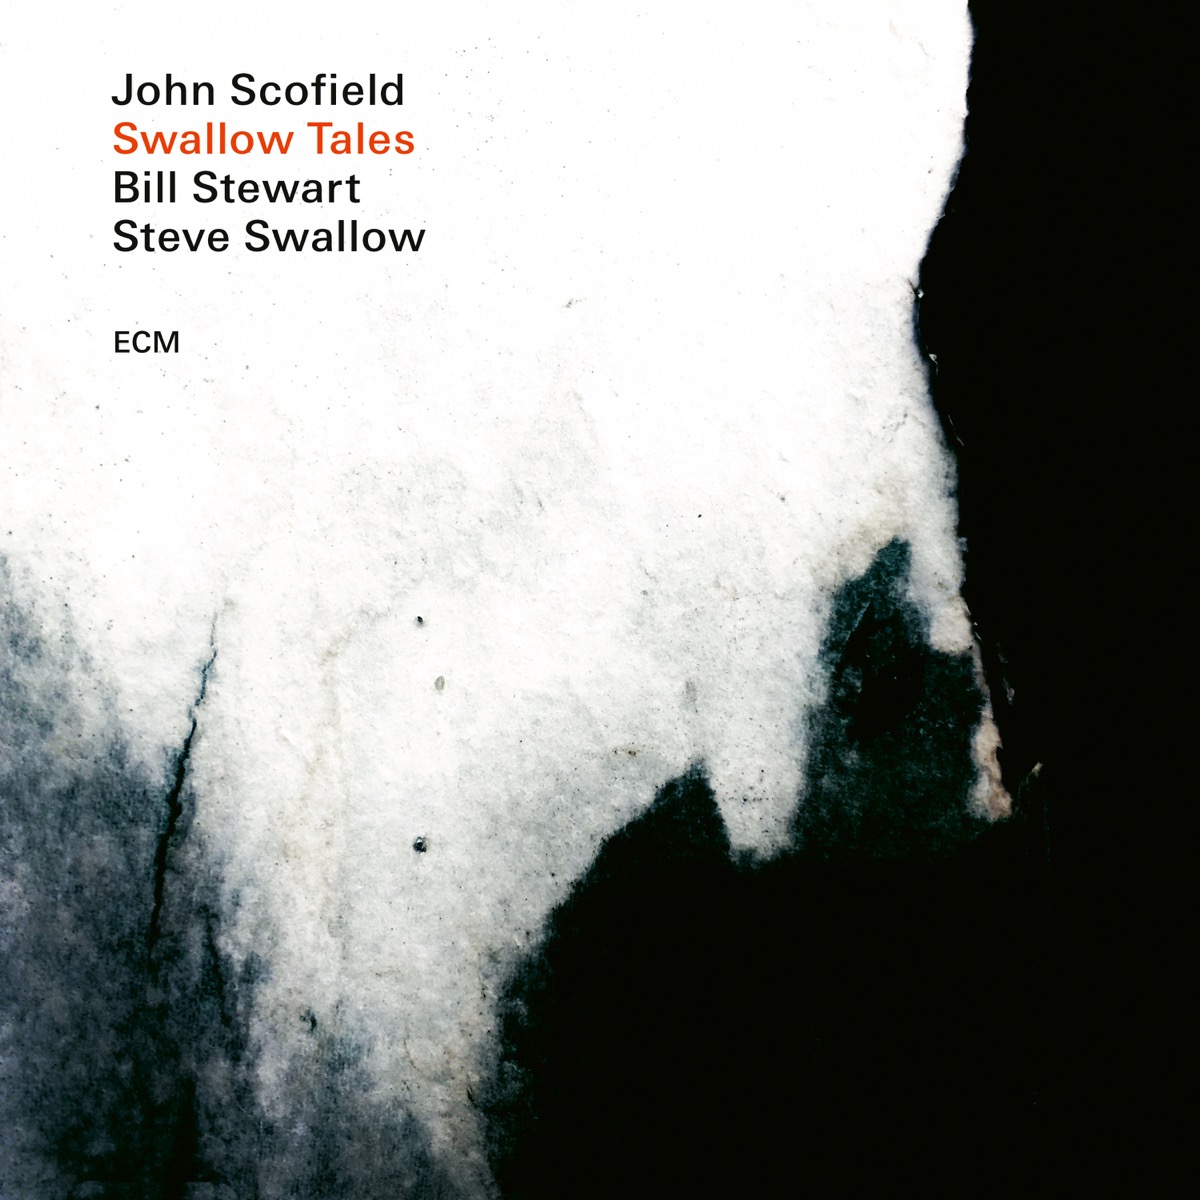 John Scofield – Steve Swallow – Bill Stewart: Swallow Tales